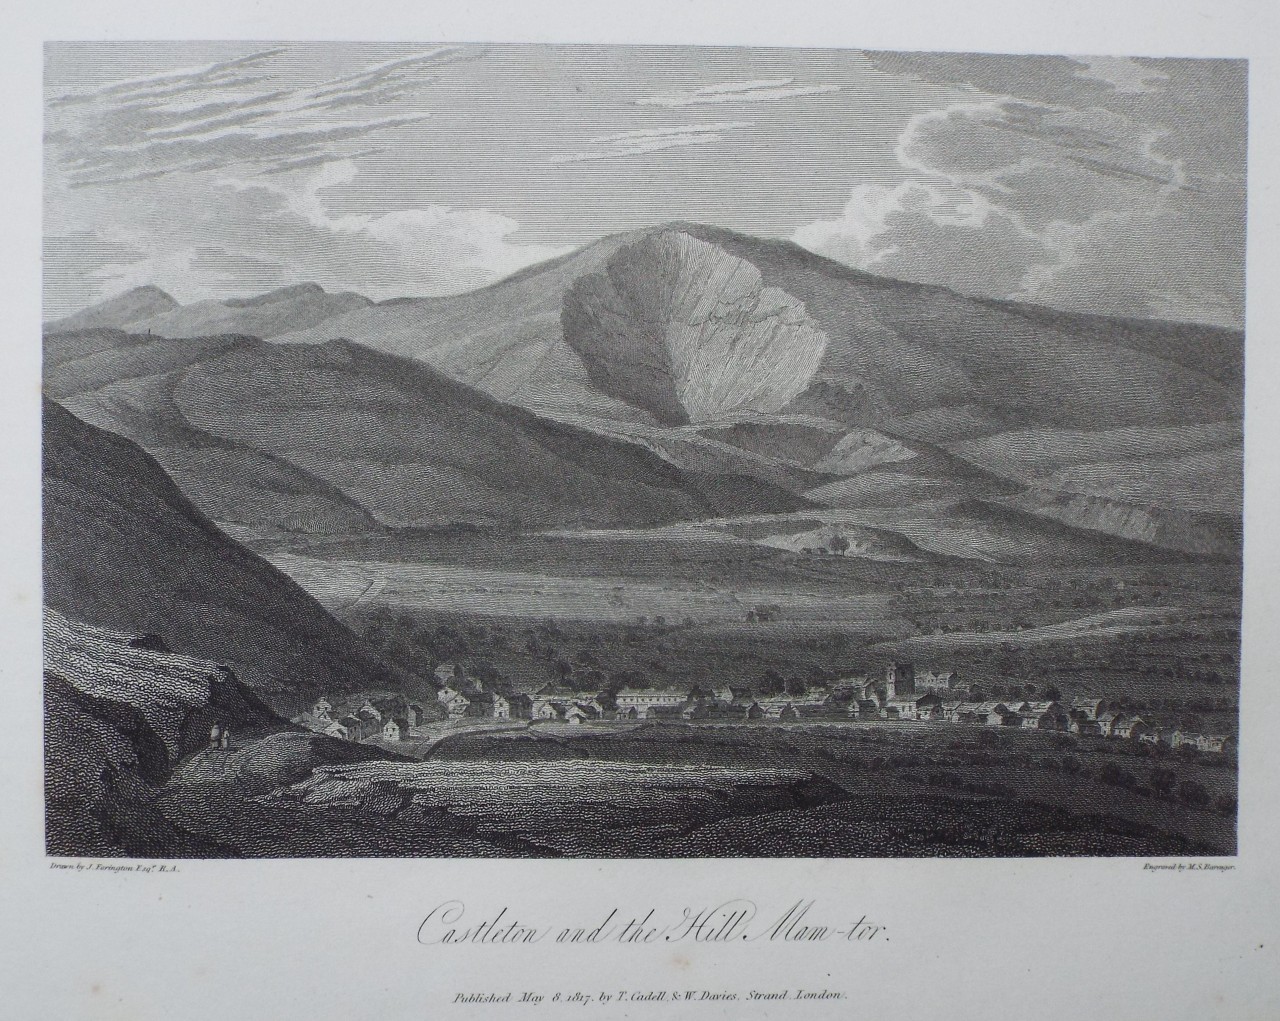 Print - Castleton and the Hill Mam-tor. - Berenger